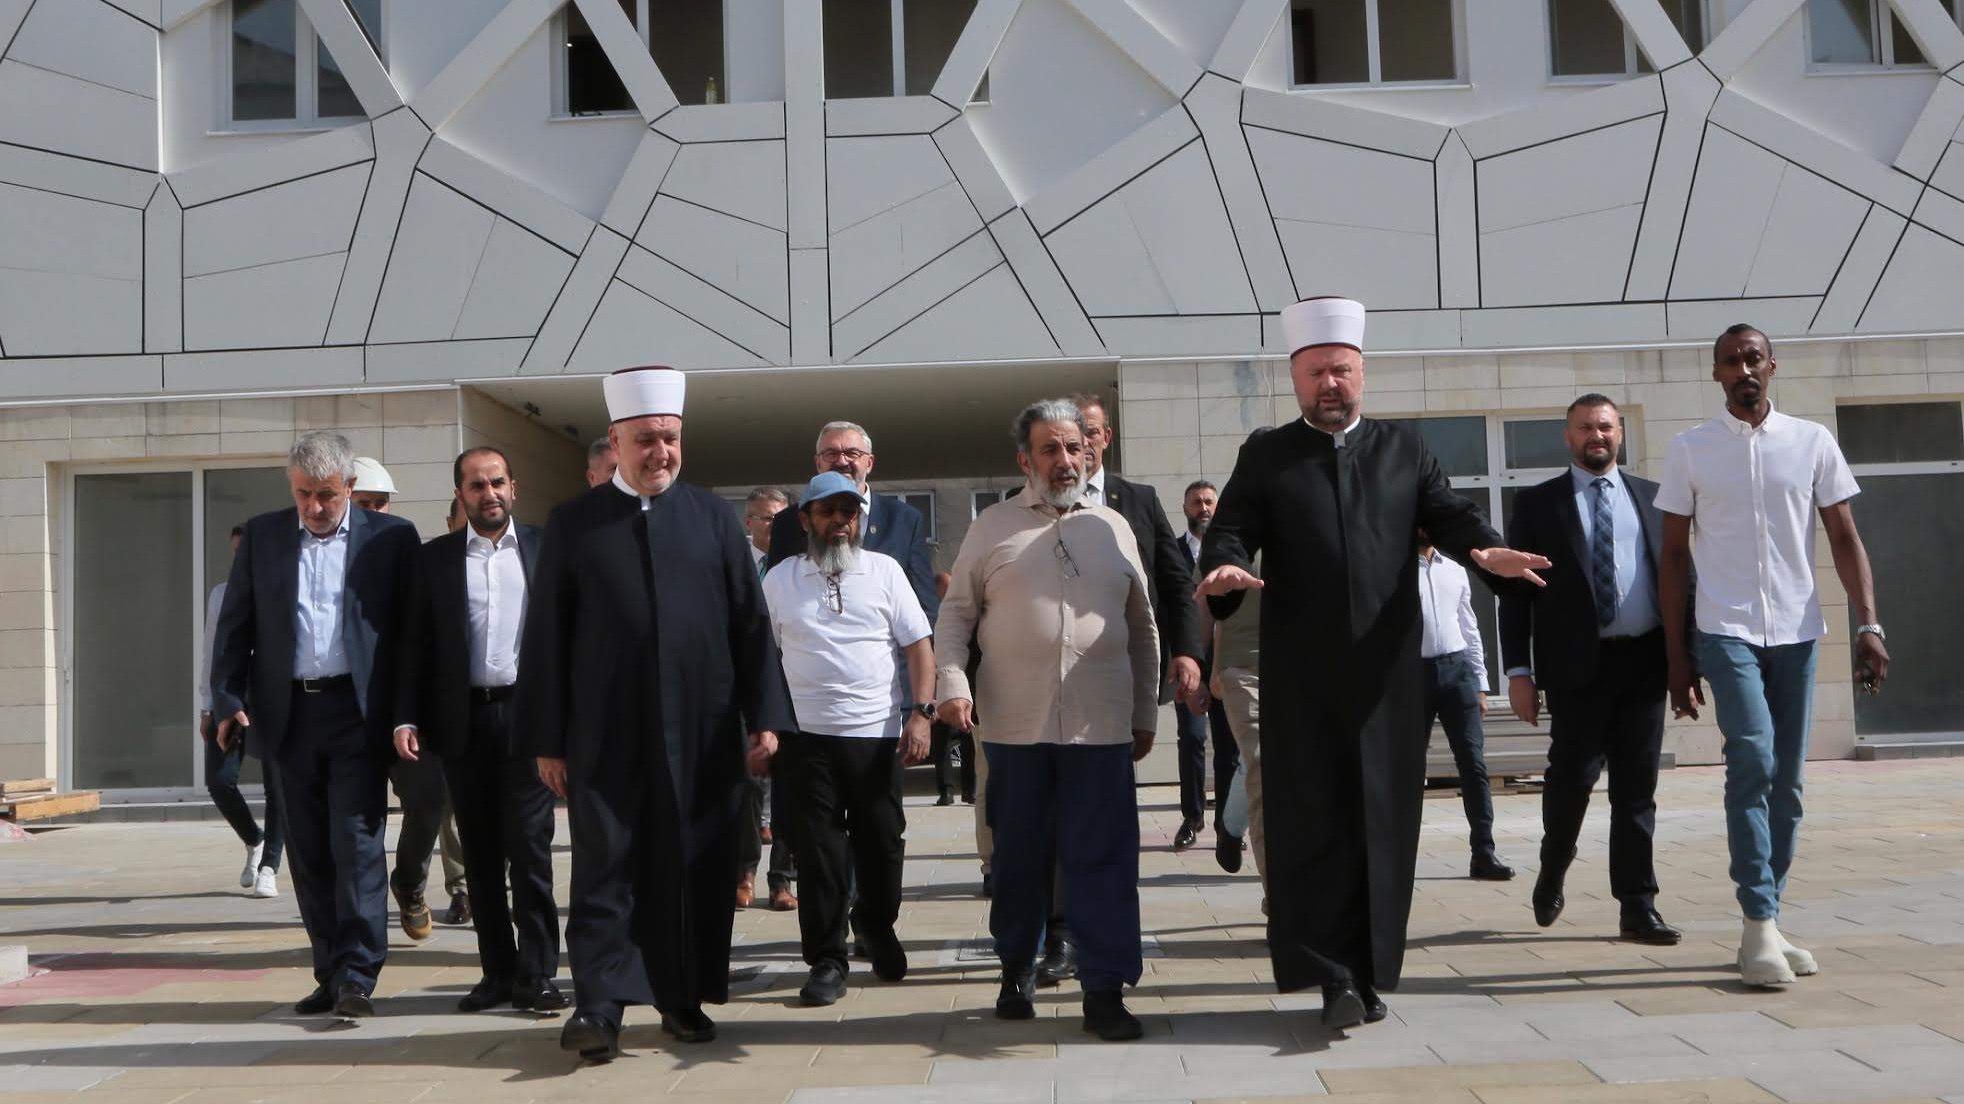 Ministar vakufa i islamskih pitanja Države Katar posjetio Zenicu